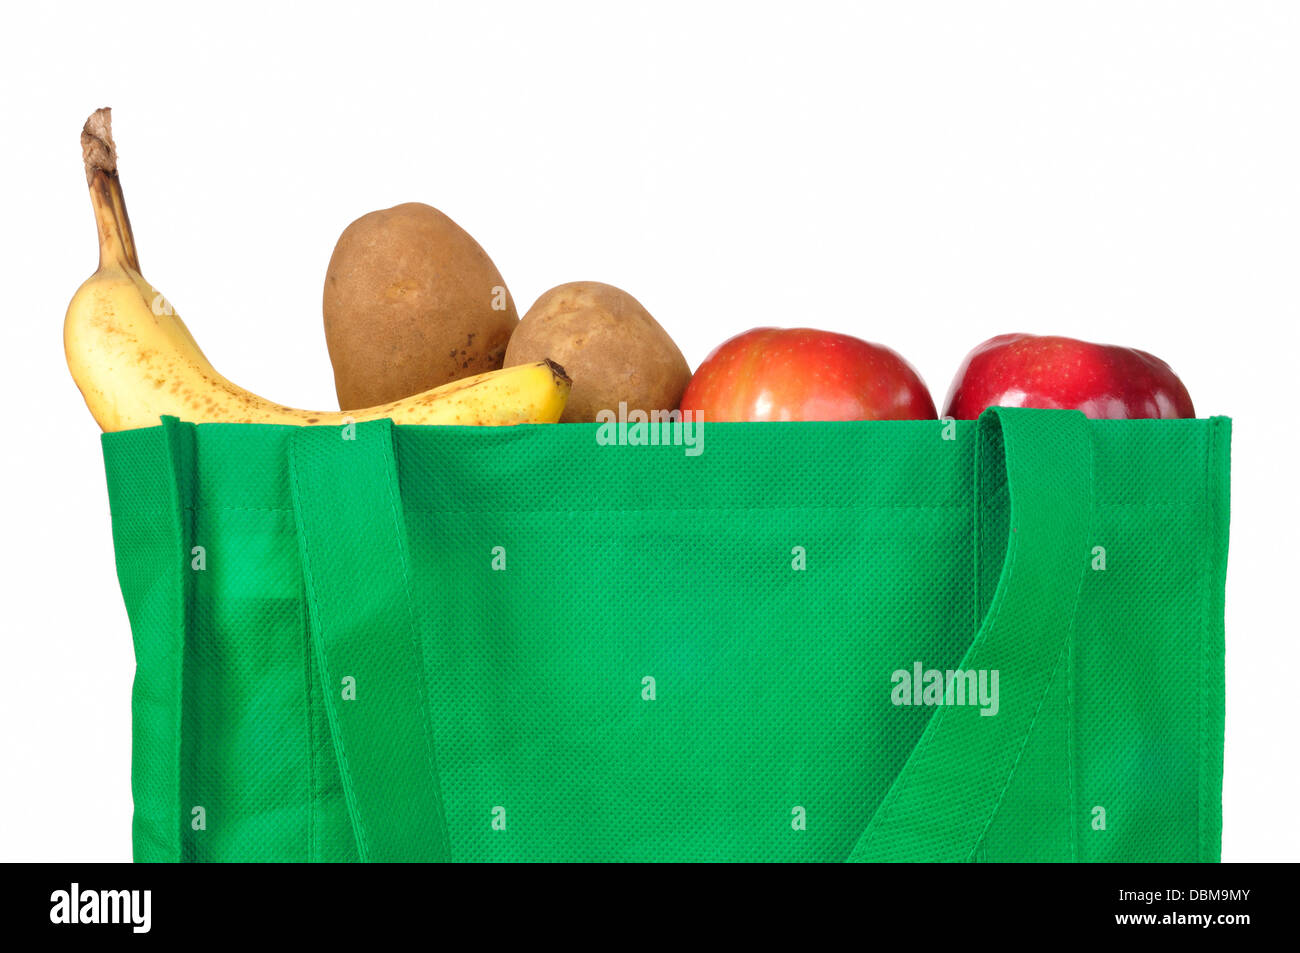 De compras con bolsas de la compra de frutas y hortalizas Foto de stock